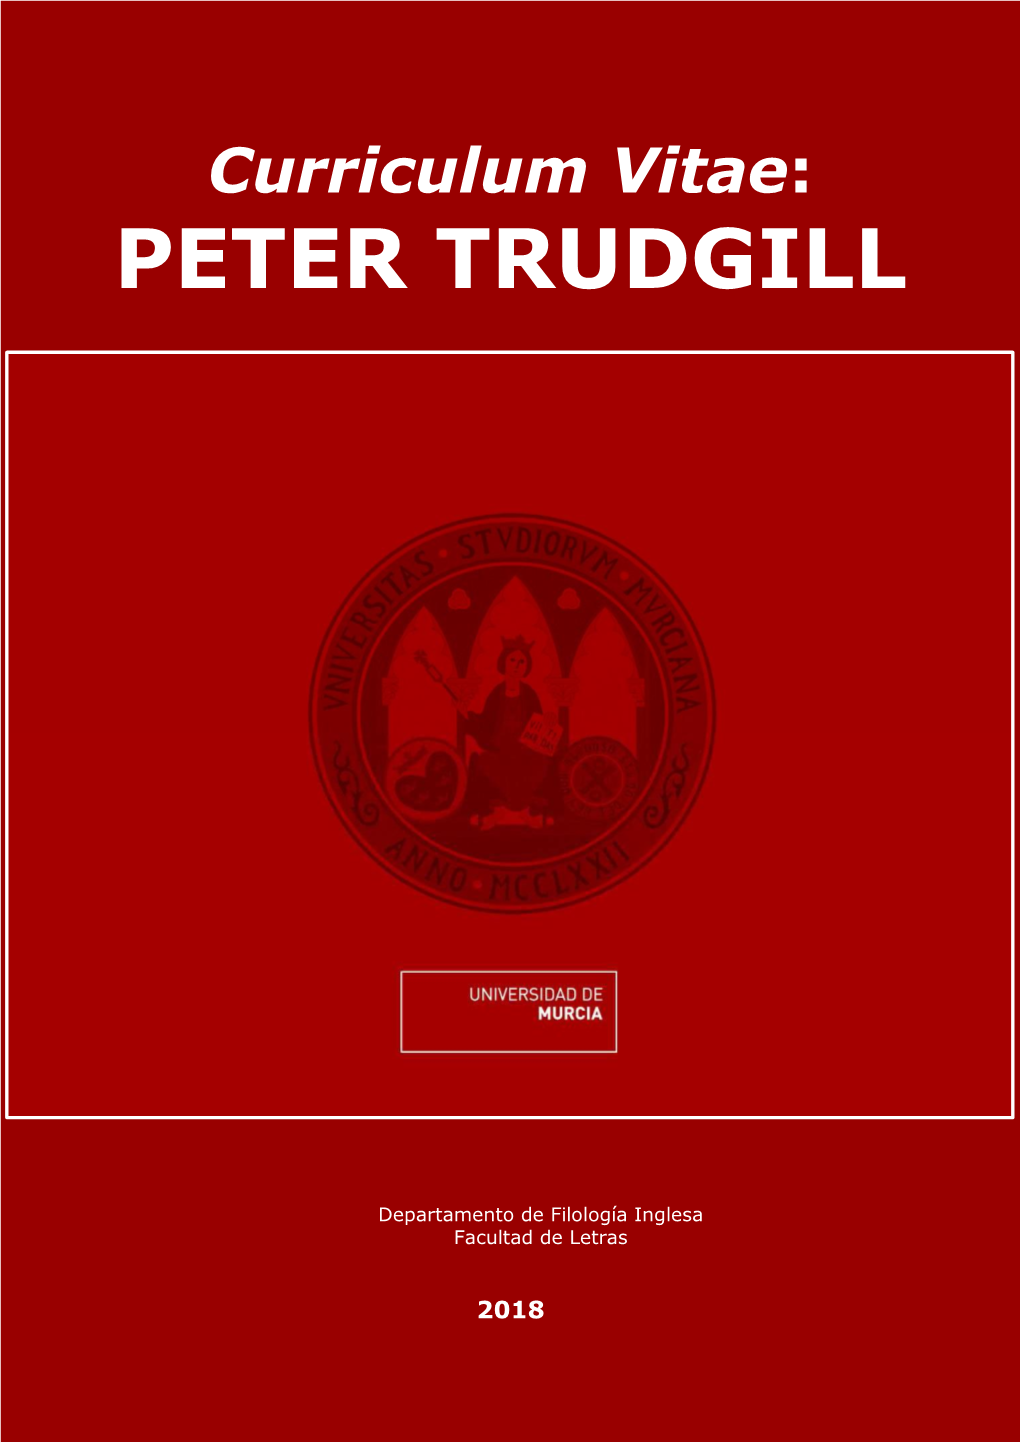 Peter Trudgill